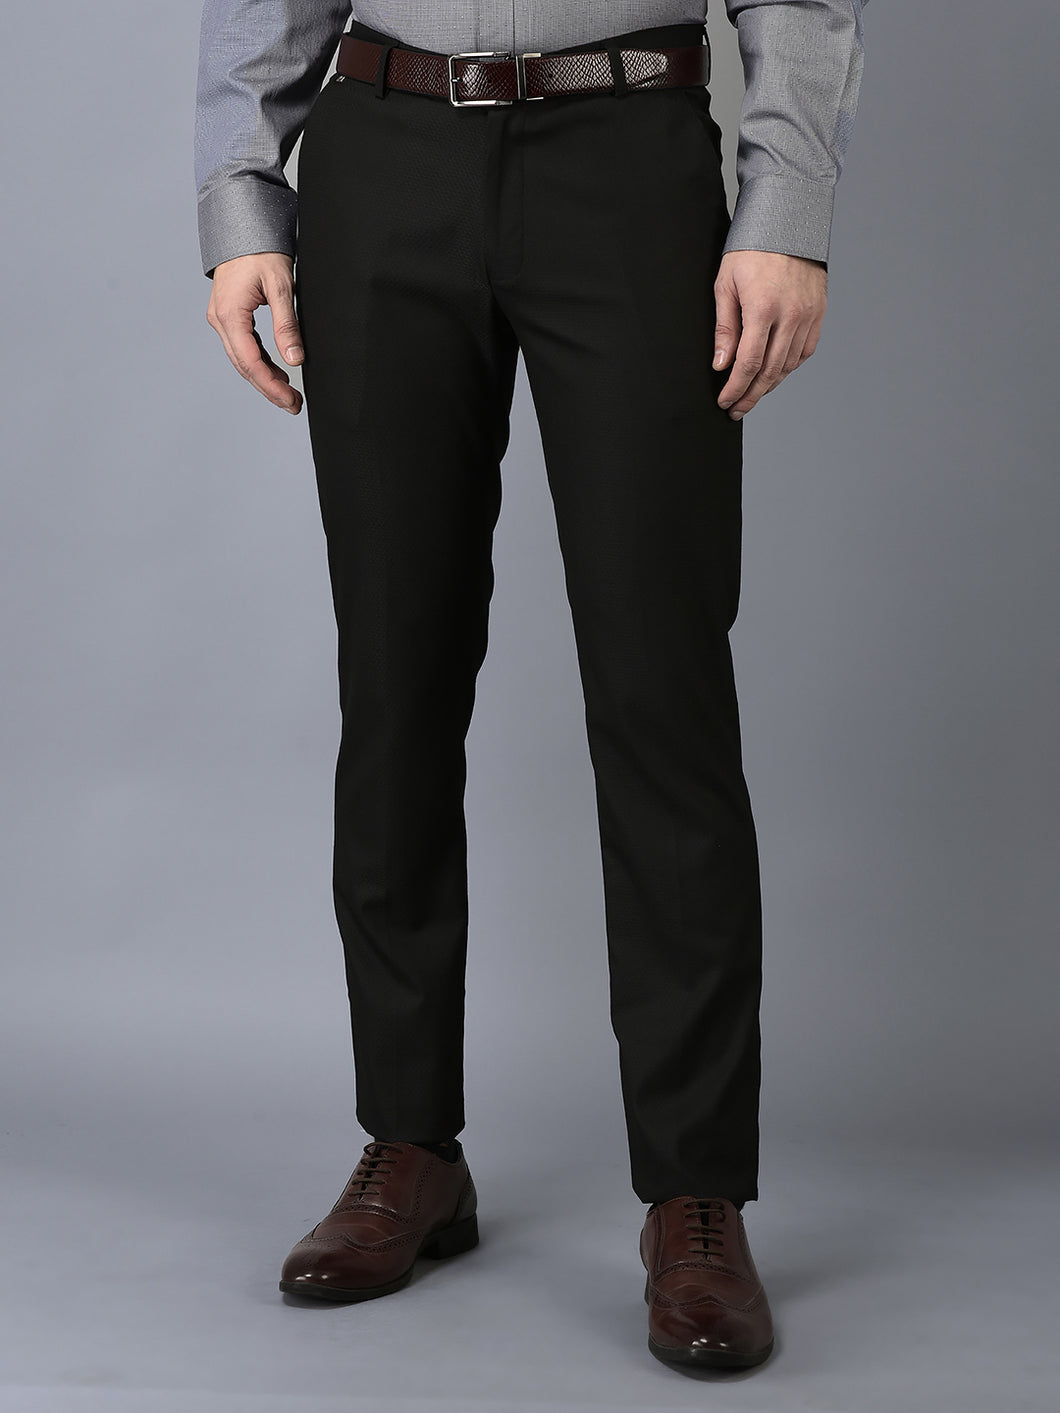 CANOE MEN Formal Trouser  BLACK Color